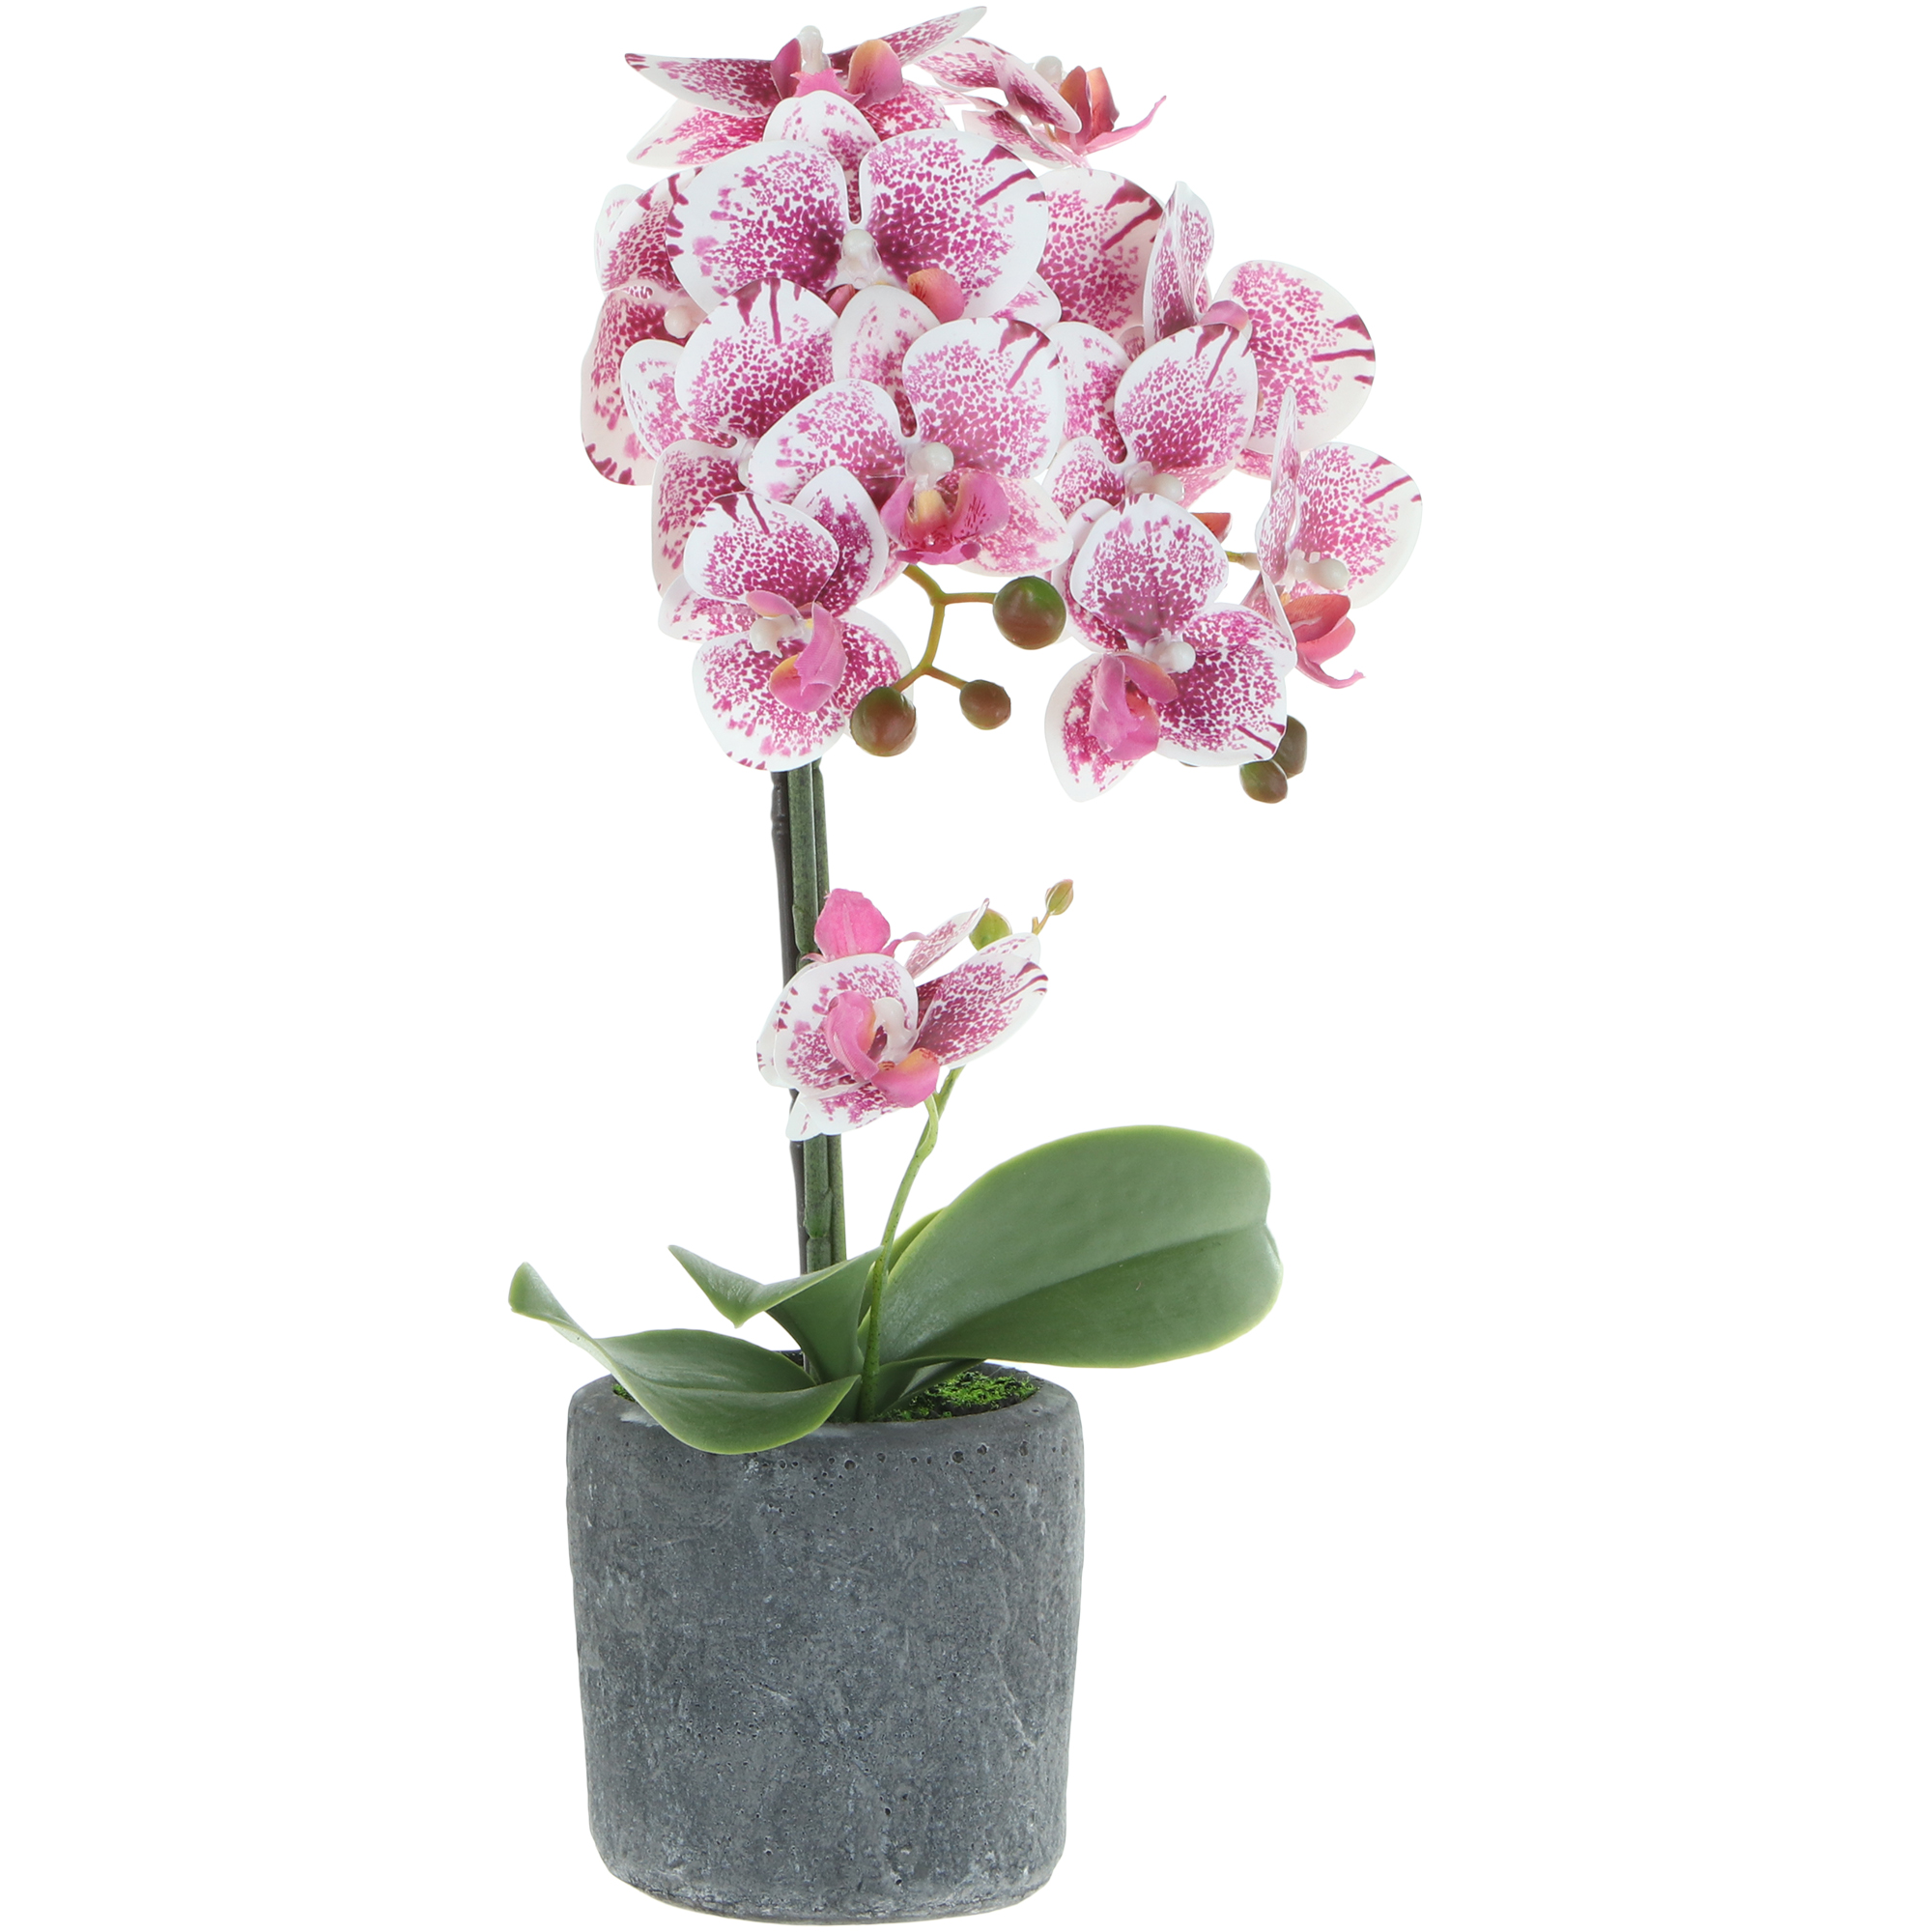 Цветок искусственный в горшке Fuzhou Light орхидея бело-розовая, 3 цвета 42 см